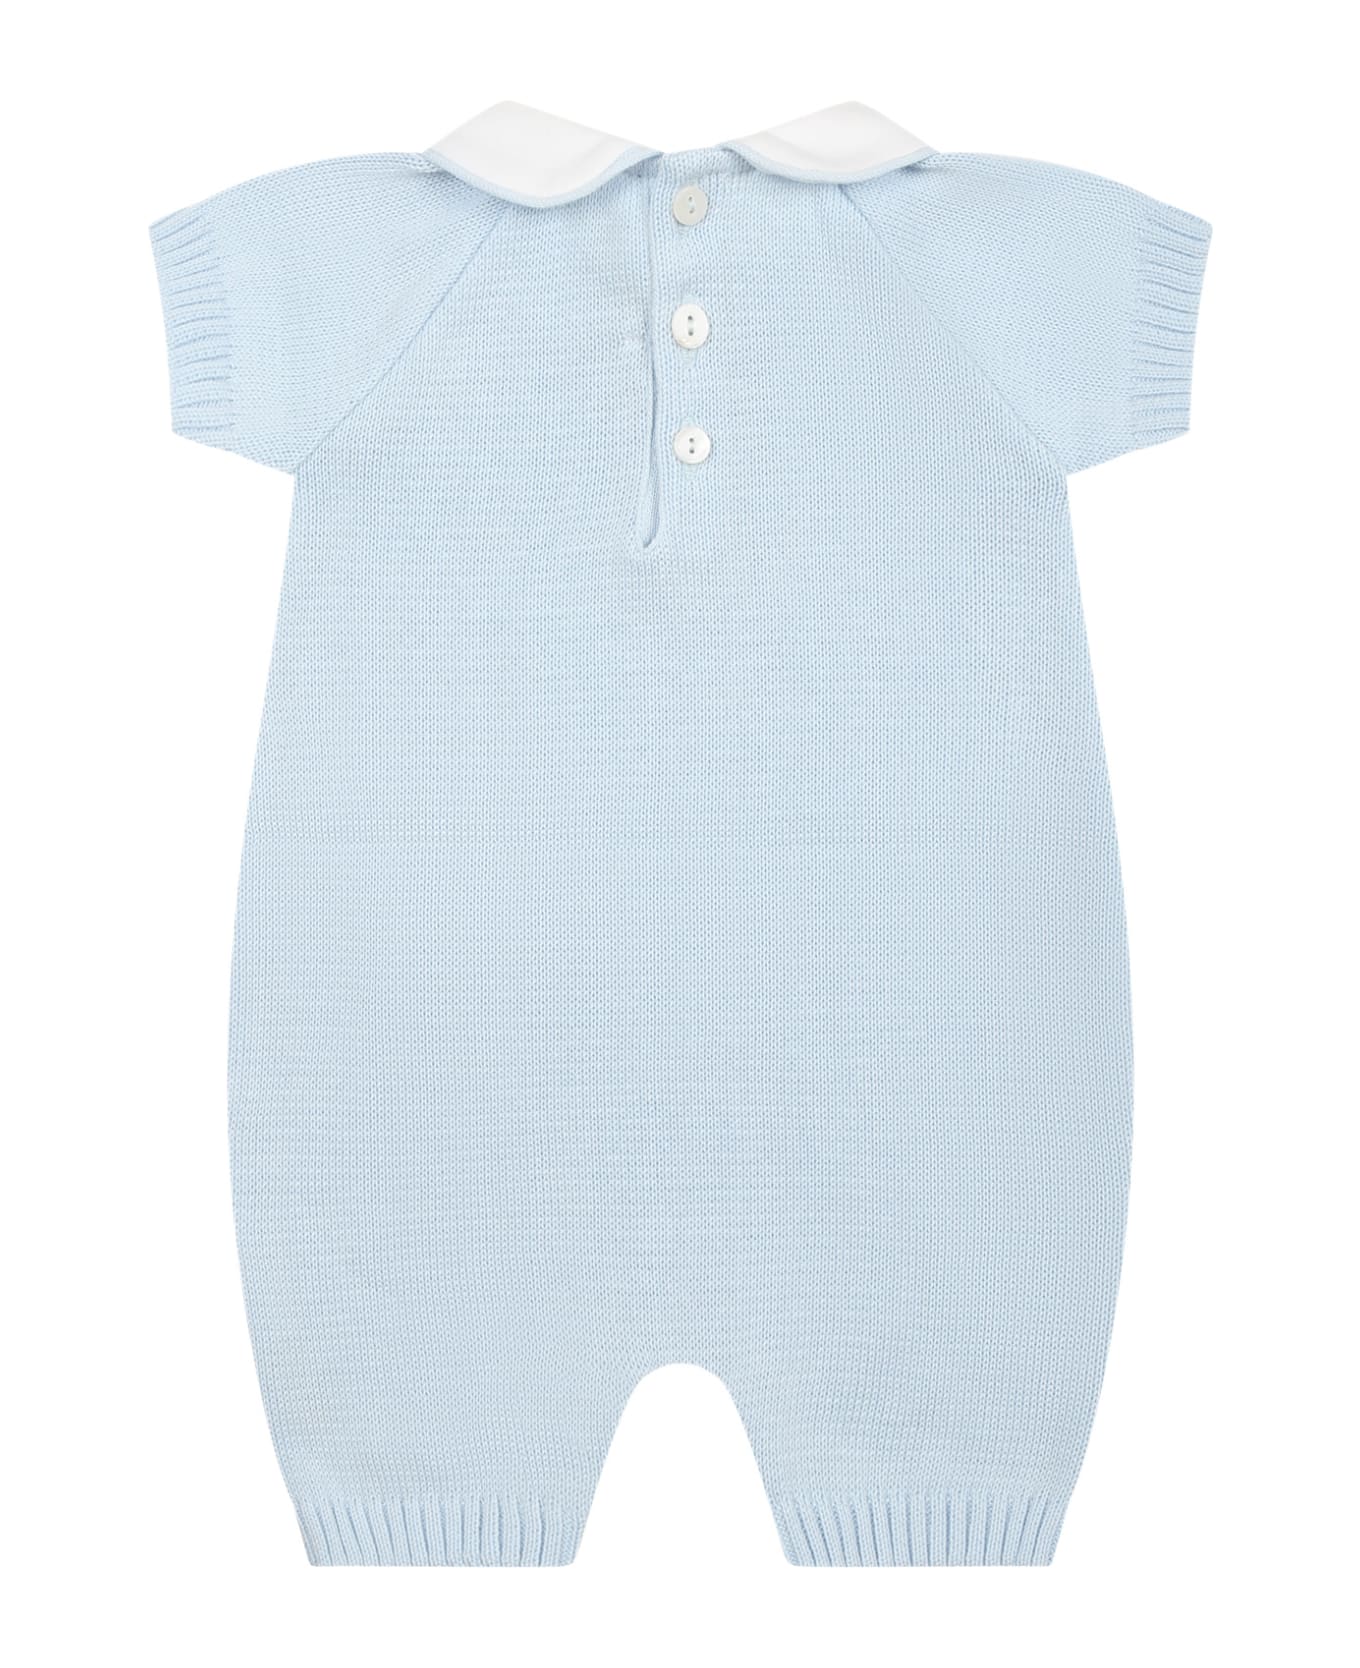 Little Bear Sky Blue Romper For Baby Boy - Light Blue